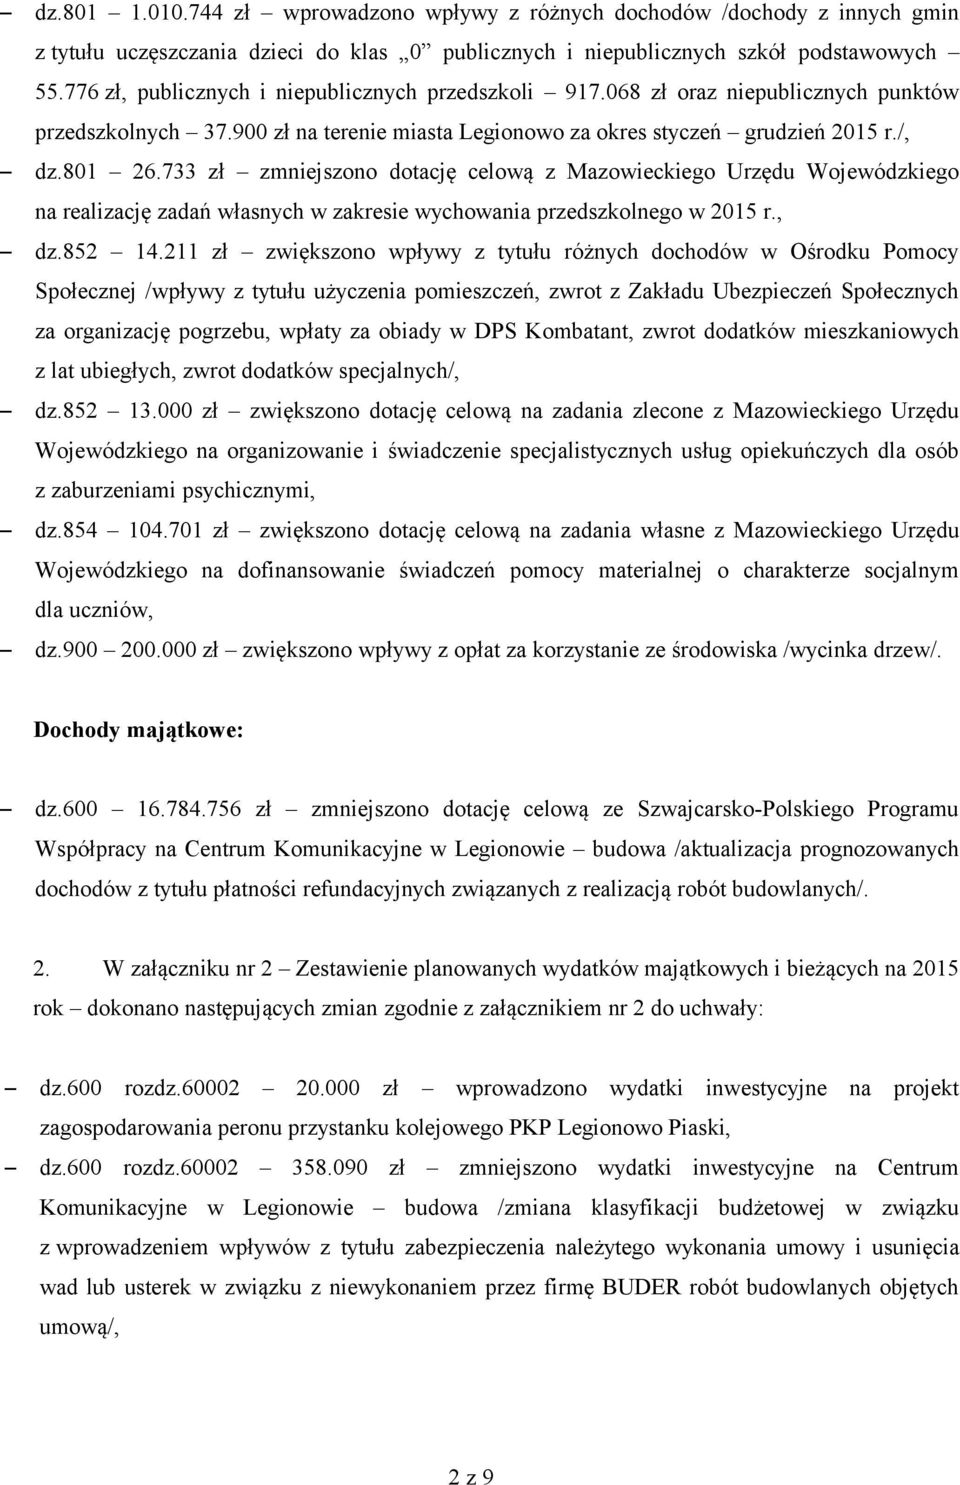 733 zł zmniejszono dotację celową z Mazowieckiego Urzędu Wojewódzkiego na realizację zadań własnych w zakresie wychowania przedszkolnego w 2015 r., dz.852 14.